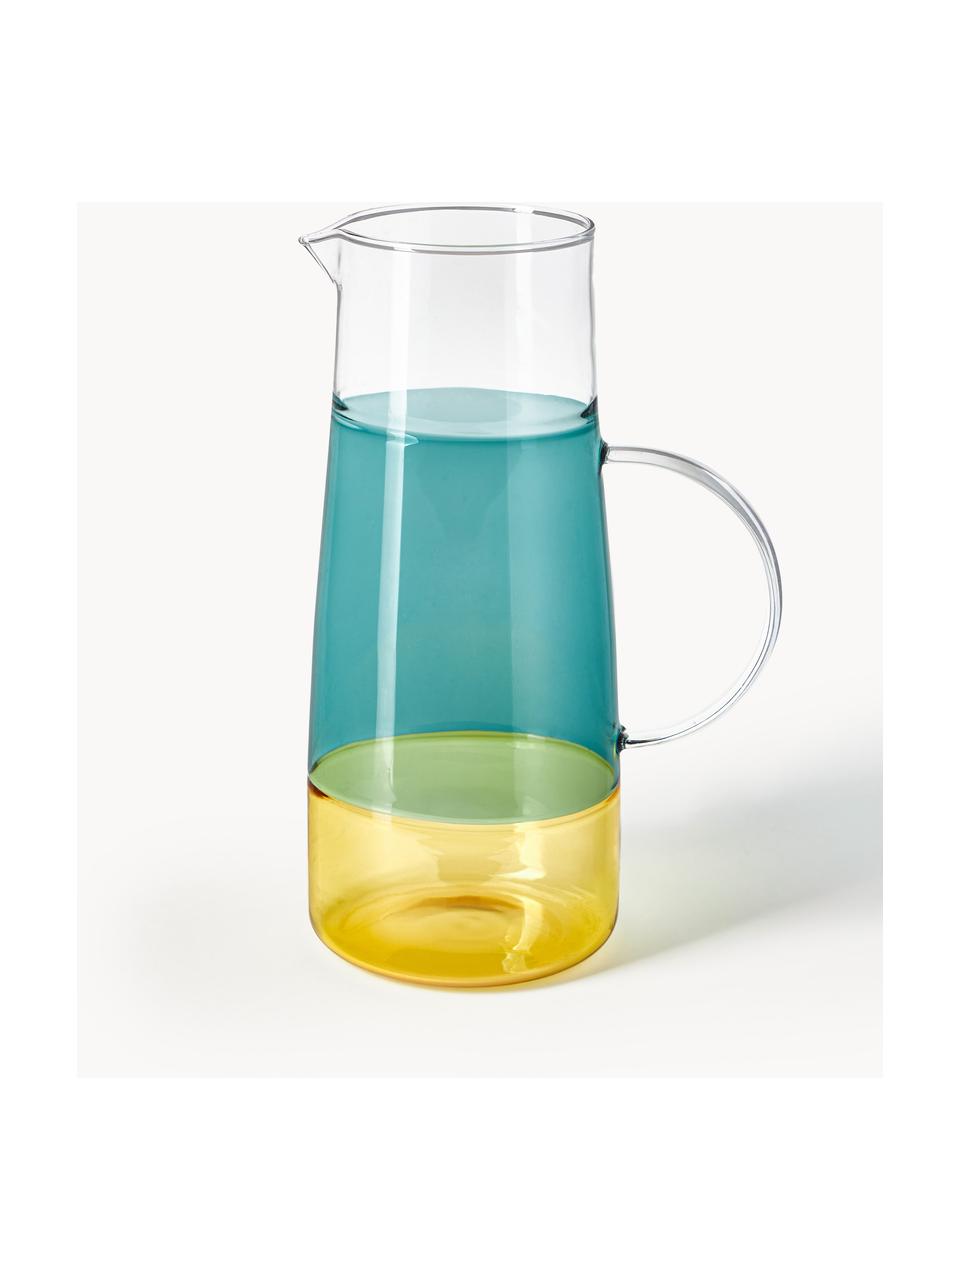 Brocca in vetro soffiato Lemonade, 1,3 L, Vetro, Verde scuro, giallo, 1.3 L